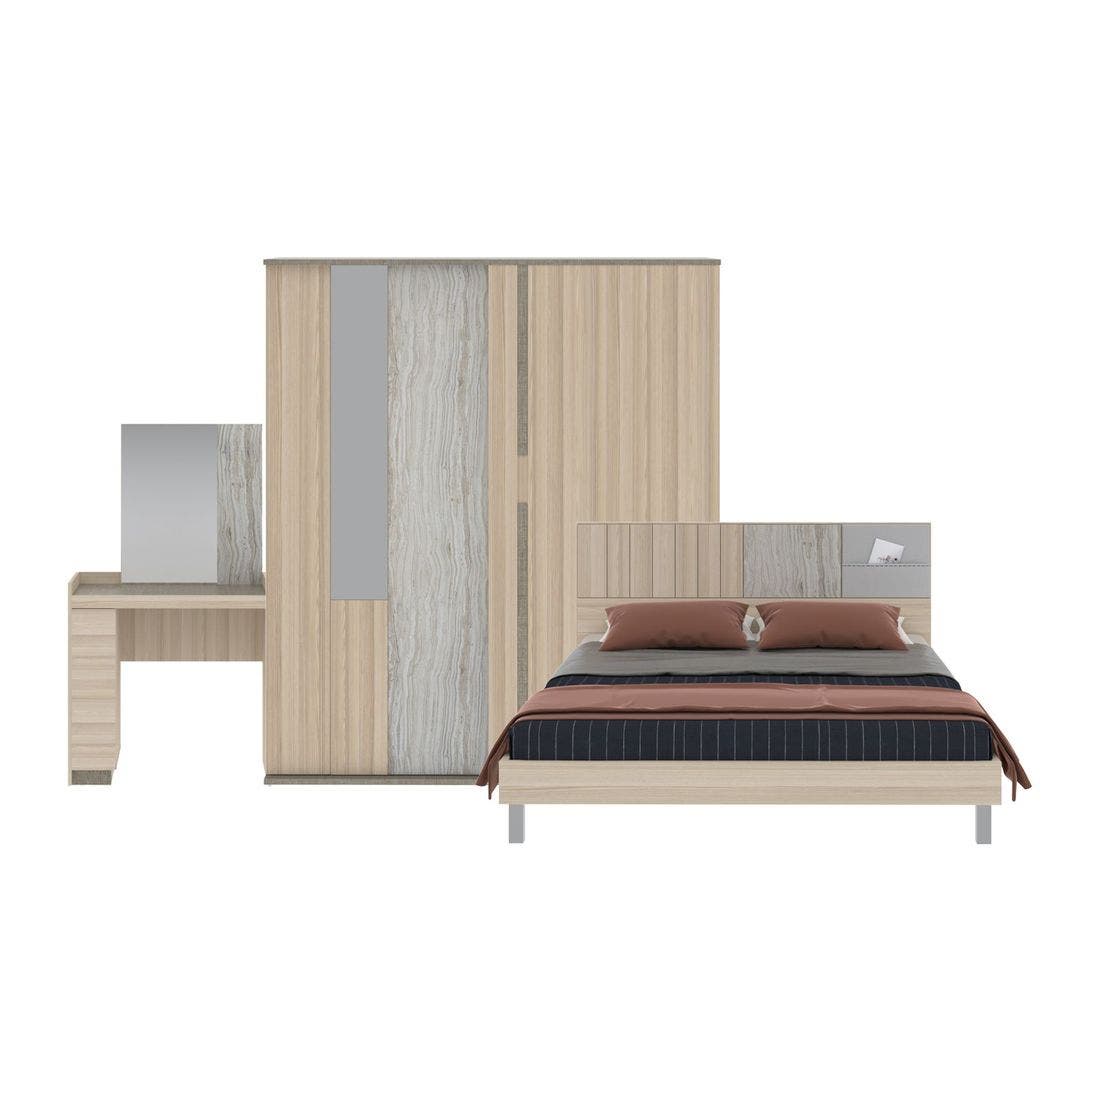 ชุดห้องนอน ชุดห้องนอนขนาด 5 ฟุต รุ่น Econi-B สีสีโอ๊คอ่อน-SB Design Square